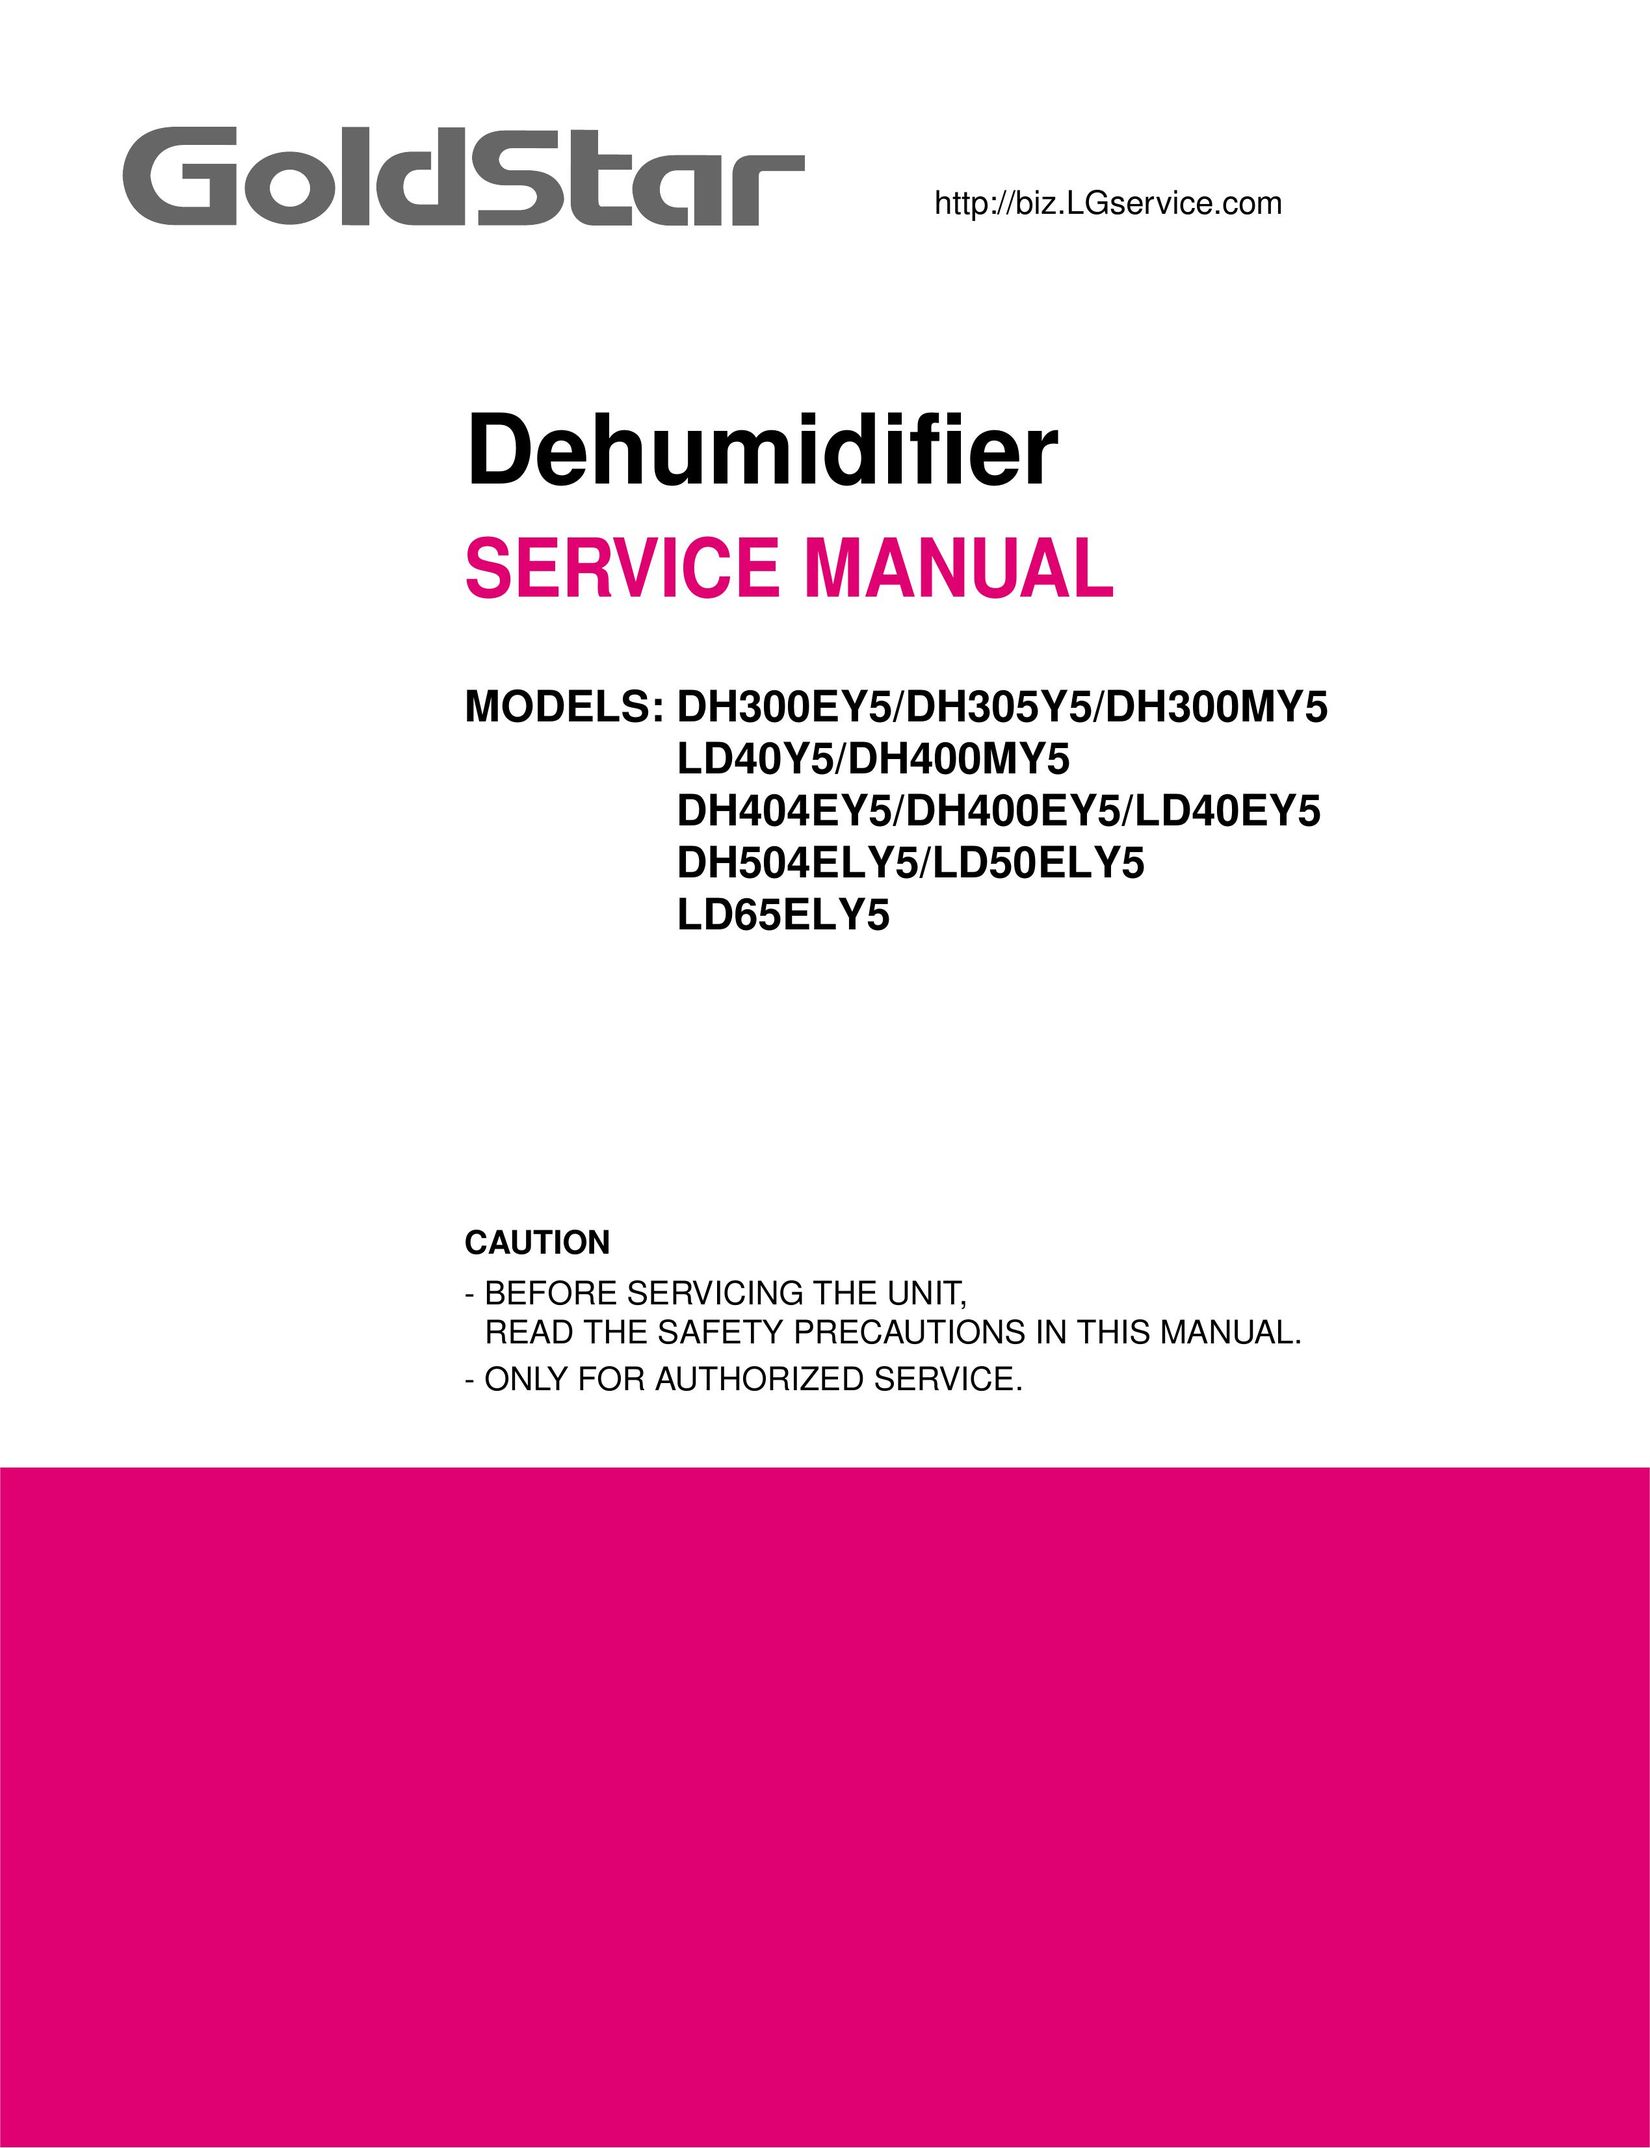 Frigidaire DH305Y5 Dehumidifier User Manual